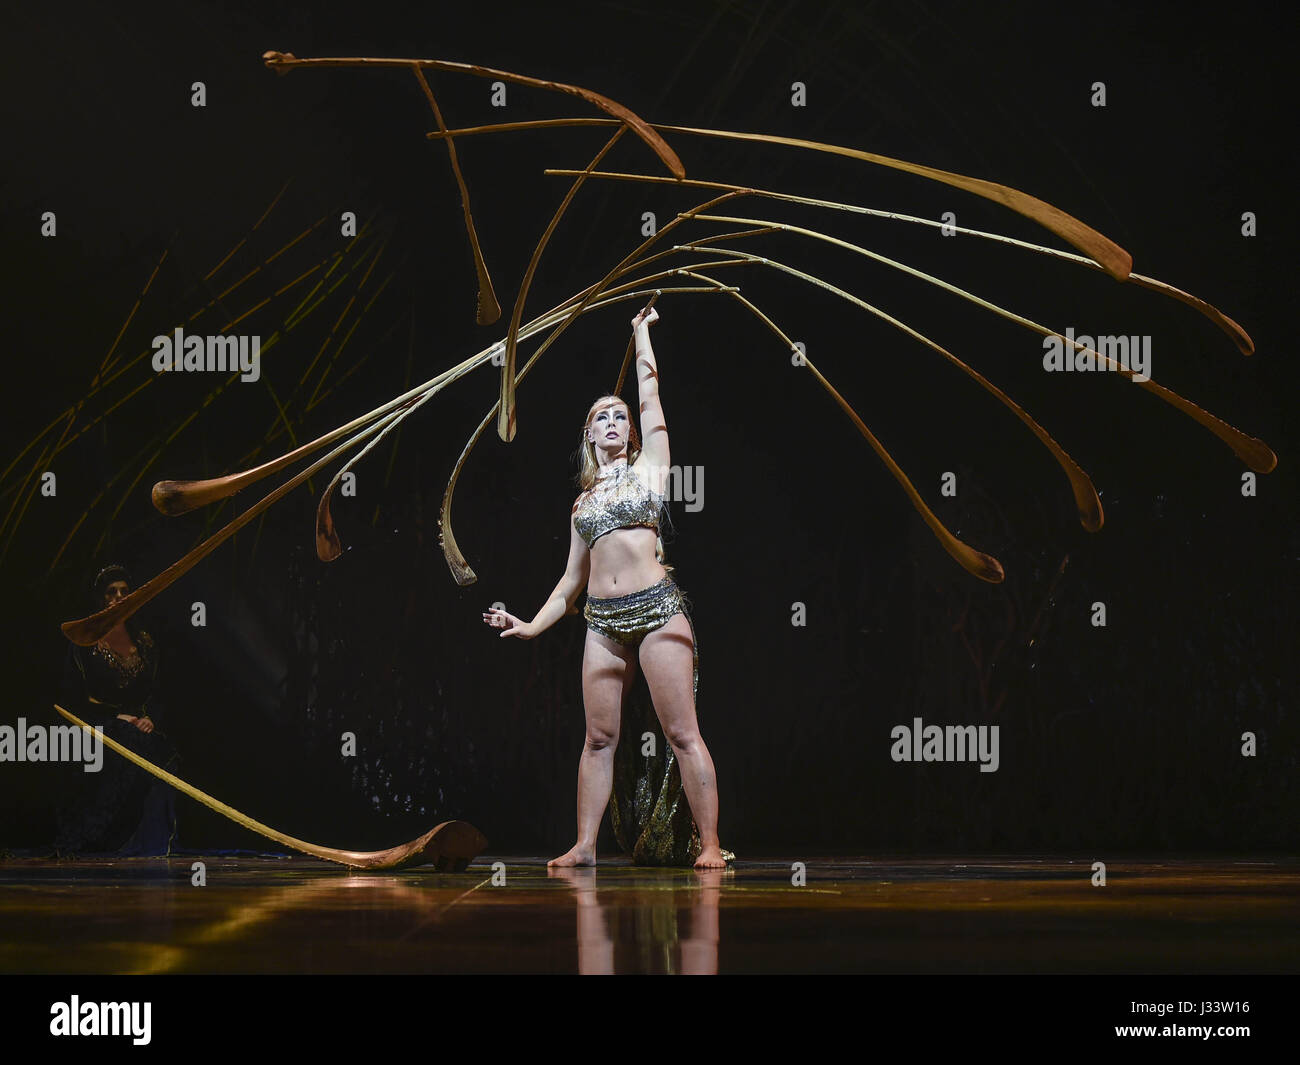 Der Cirque du Soleil Franchise-Unterhaltung Firma Kunststücke seine neueste Show AmaLuna basierend auf Shakespeares "Der Sturm" in Rom, Italien, 29. April 2017 Stockfoto